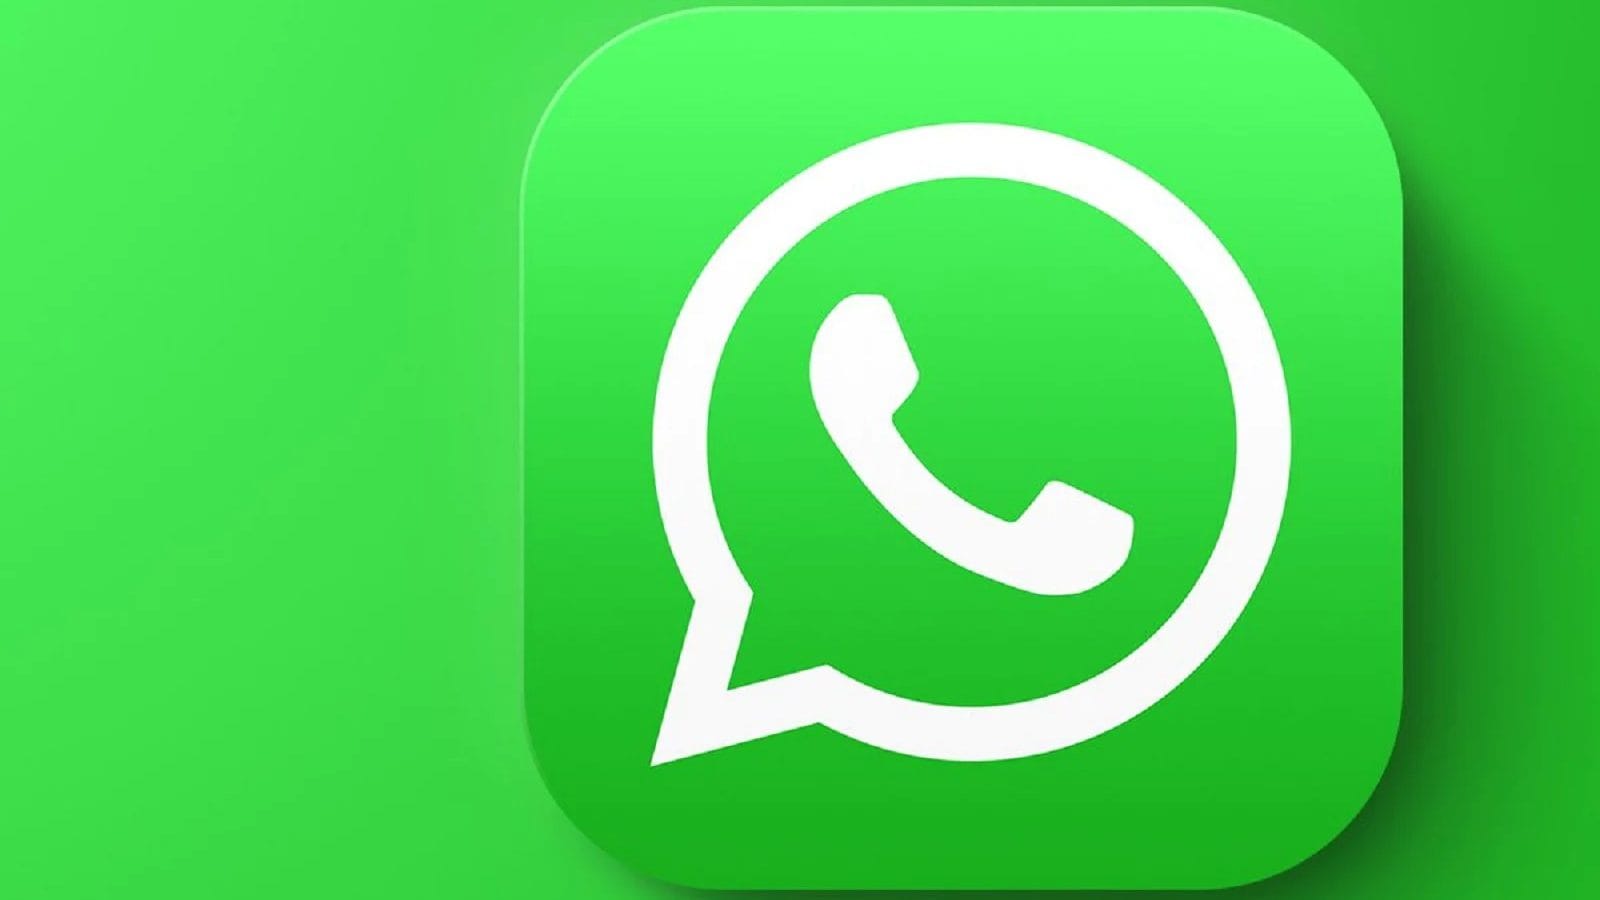 নতুন বছরে WhatsApp-এর উপহার! আসছে মাল্টিপল চ্যাট অপশন